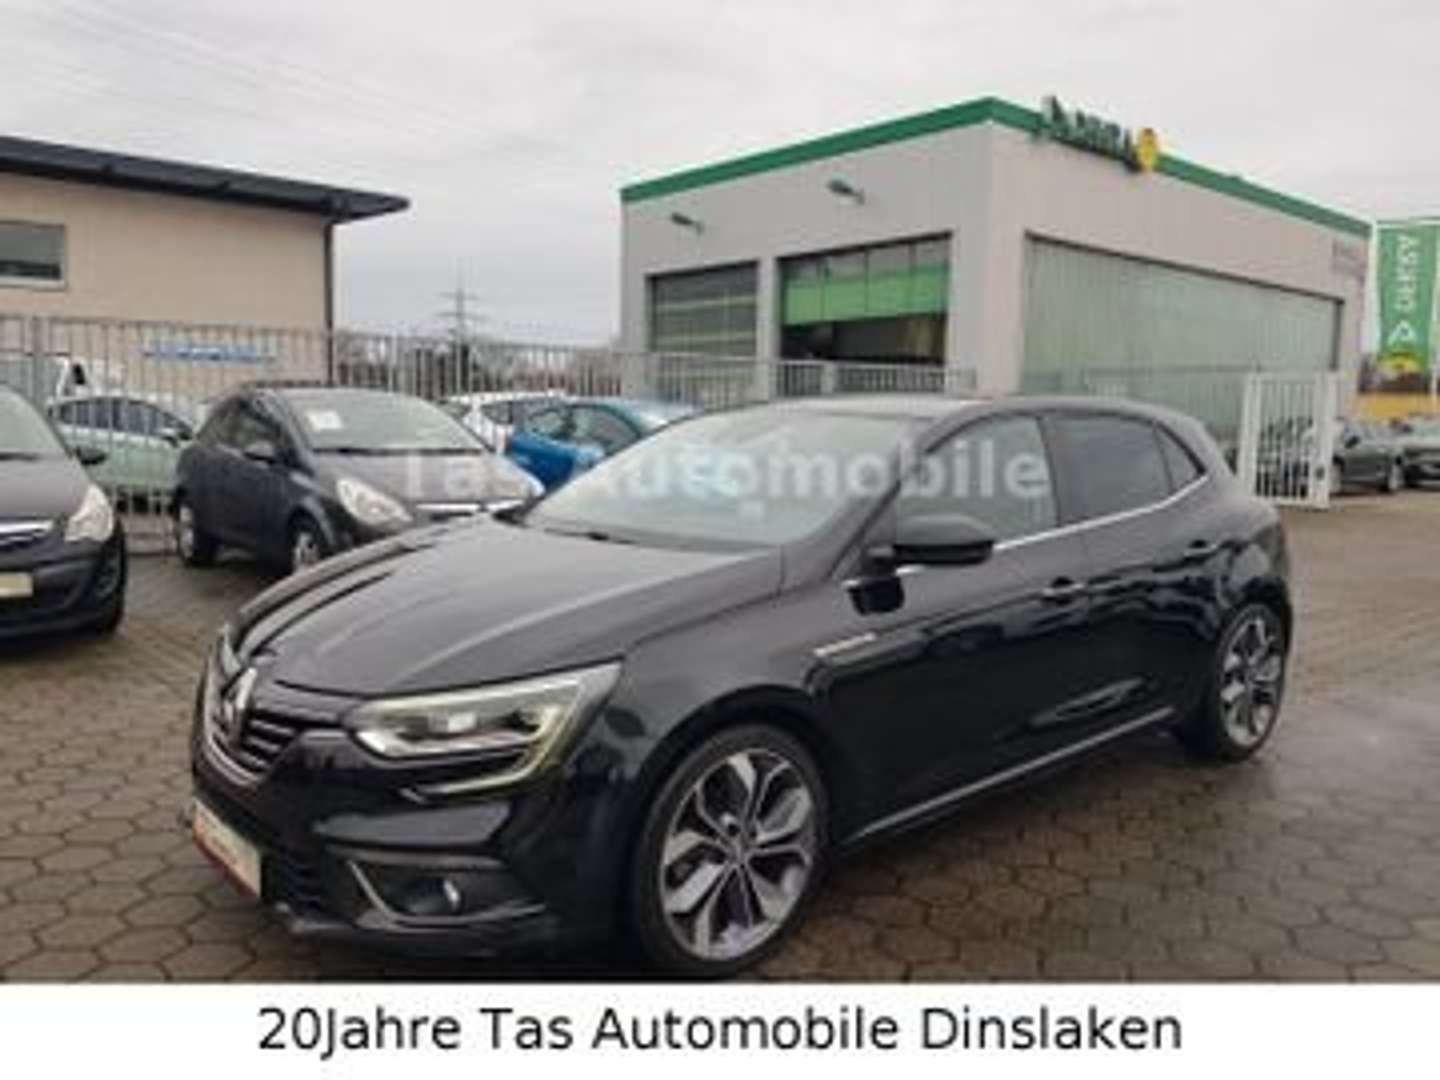 Renault Megane Limousine in Schwarz gebraucht in Dinslaken für € 11.999,-